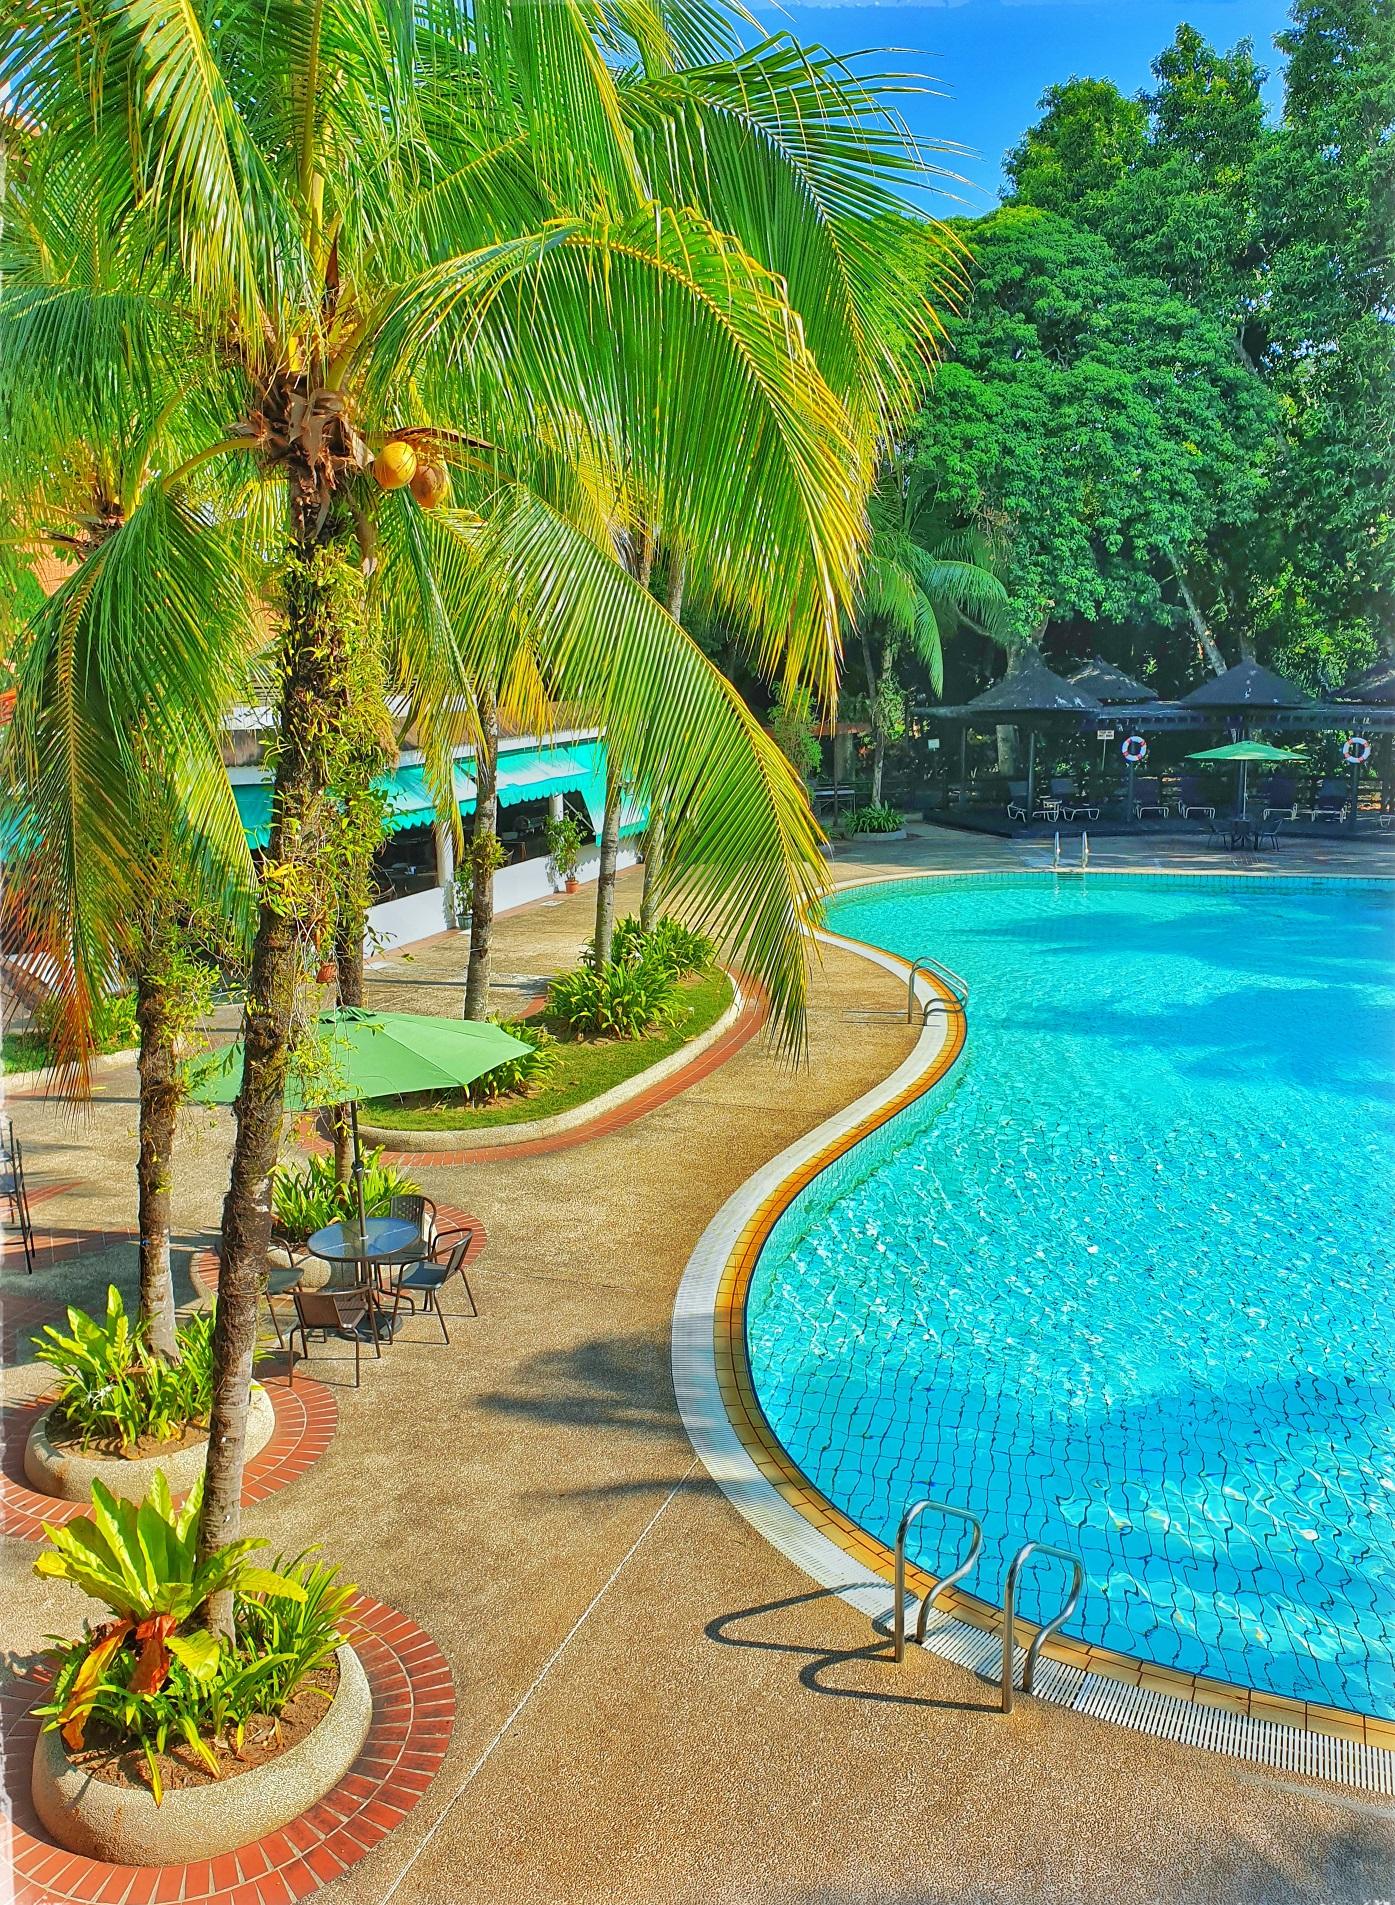 Sabah Hotel Сандакан Екстер'єр фото